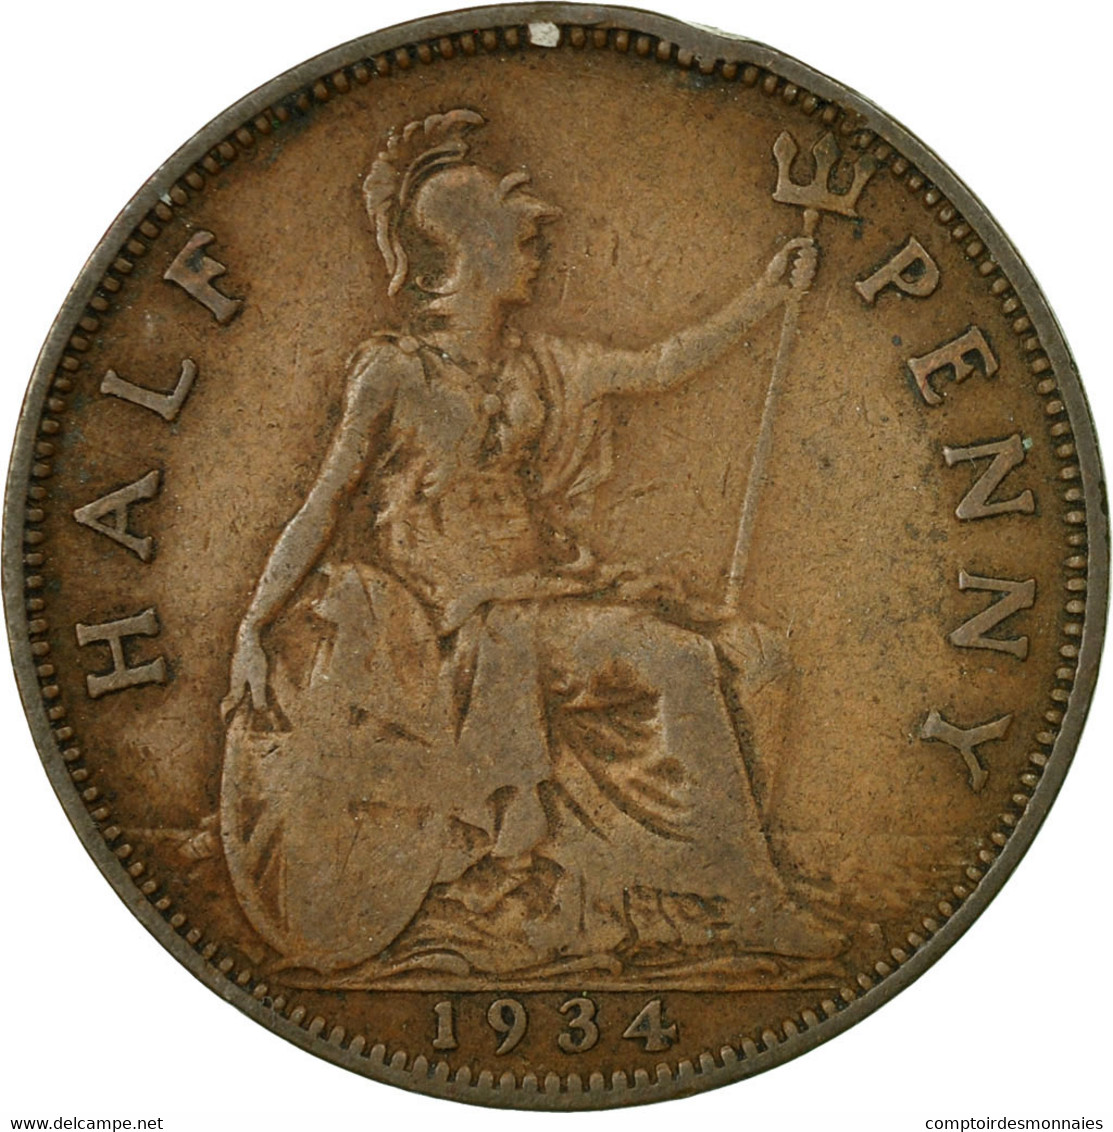 Monnaie, Grande-Bretagne, George V, 1/2 Penny, 1934, TB+, Bronze, KM:837 - C. 1/2 Penny